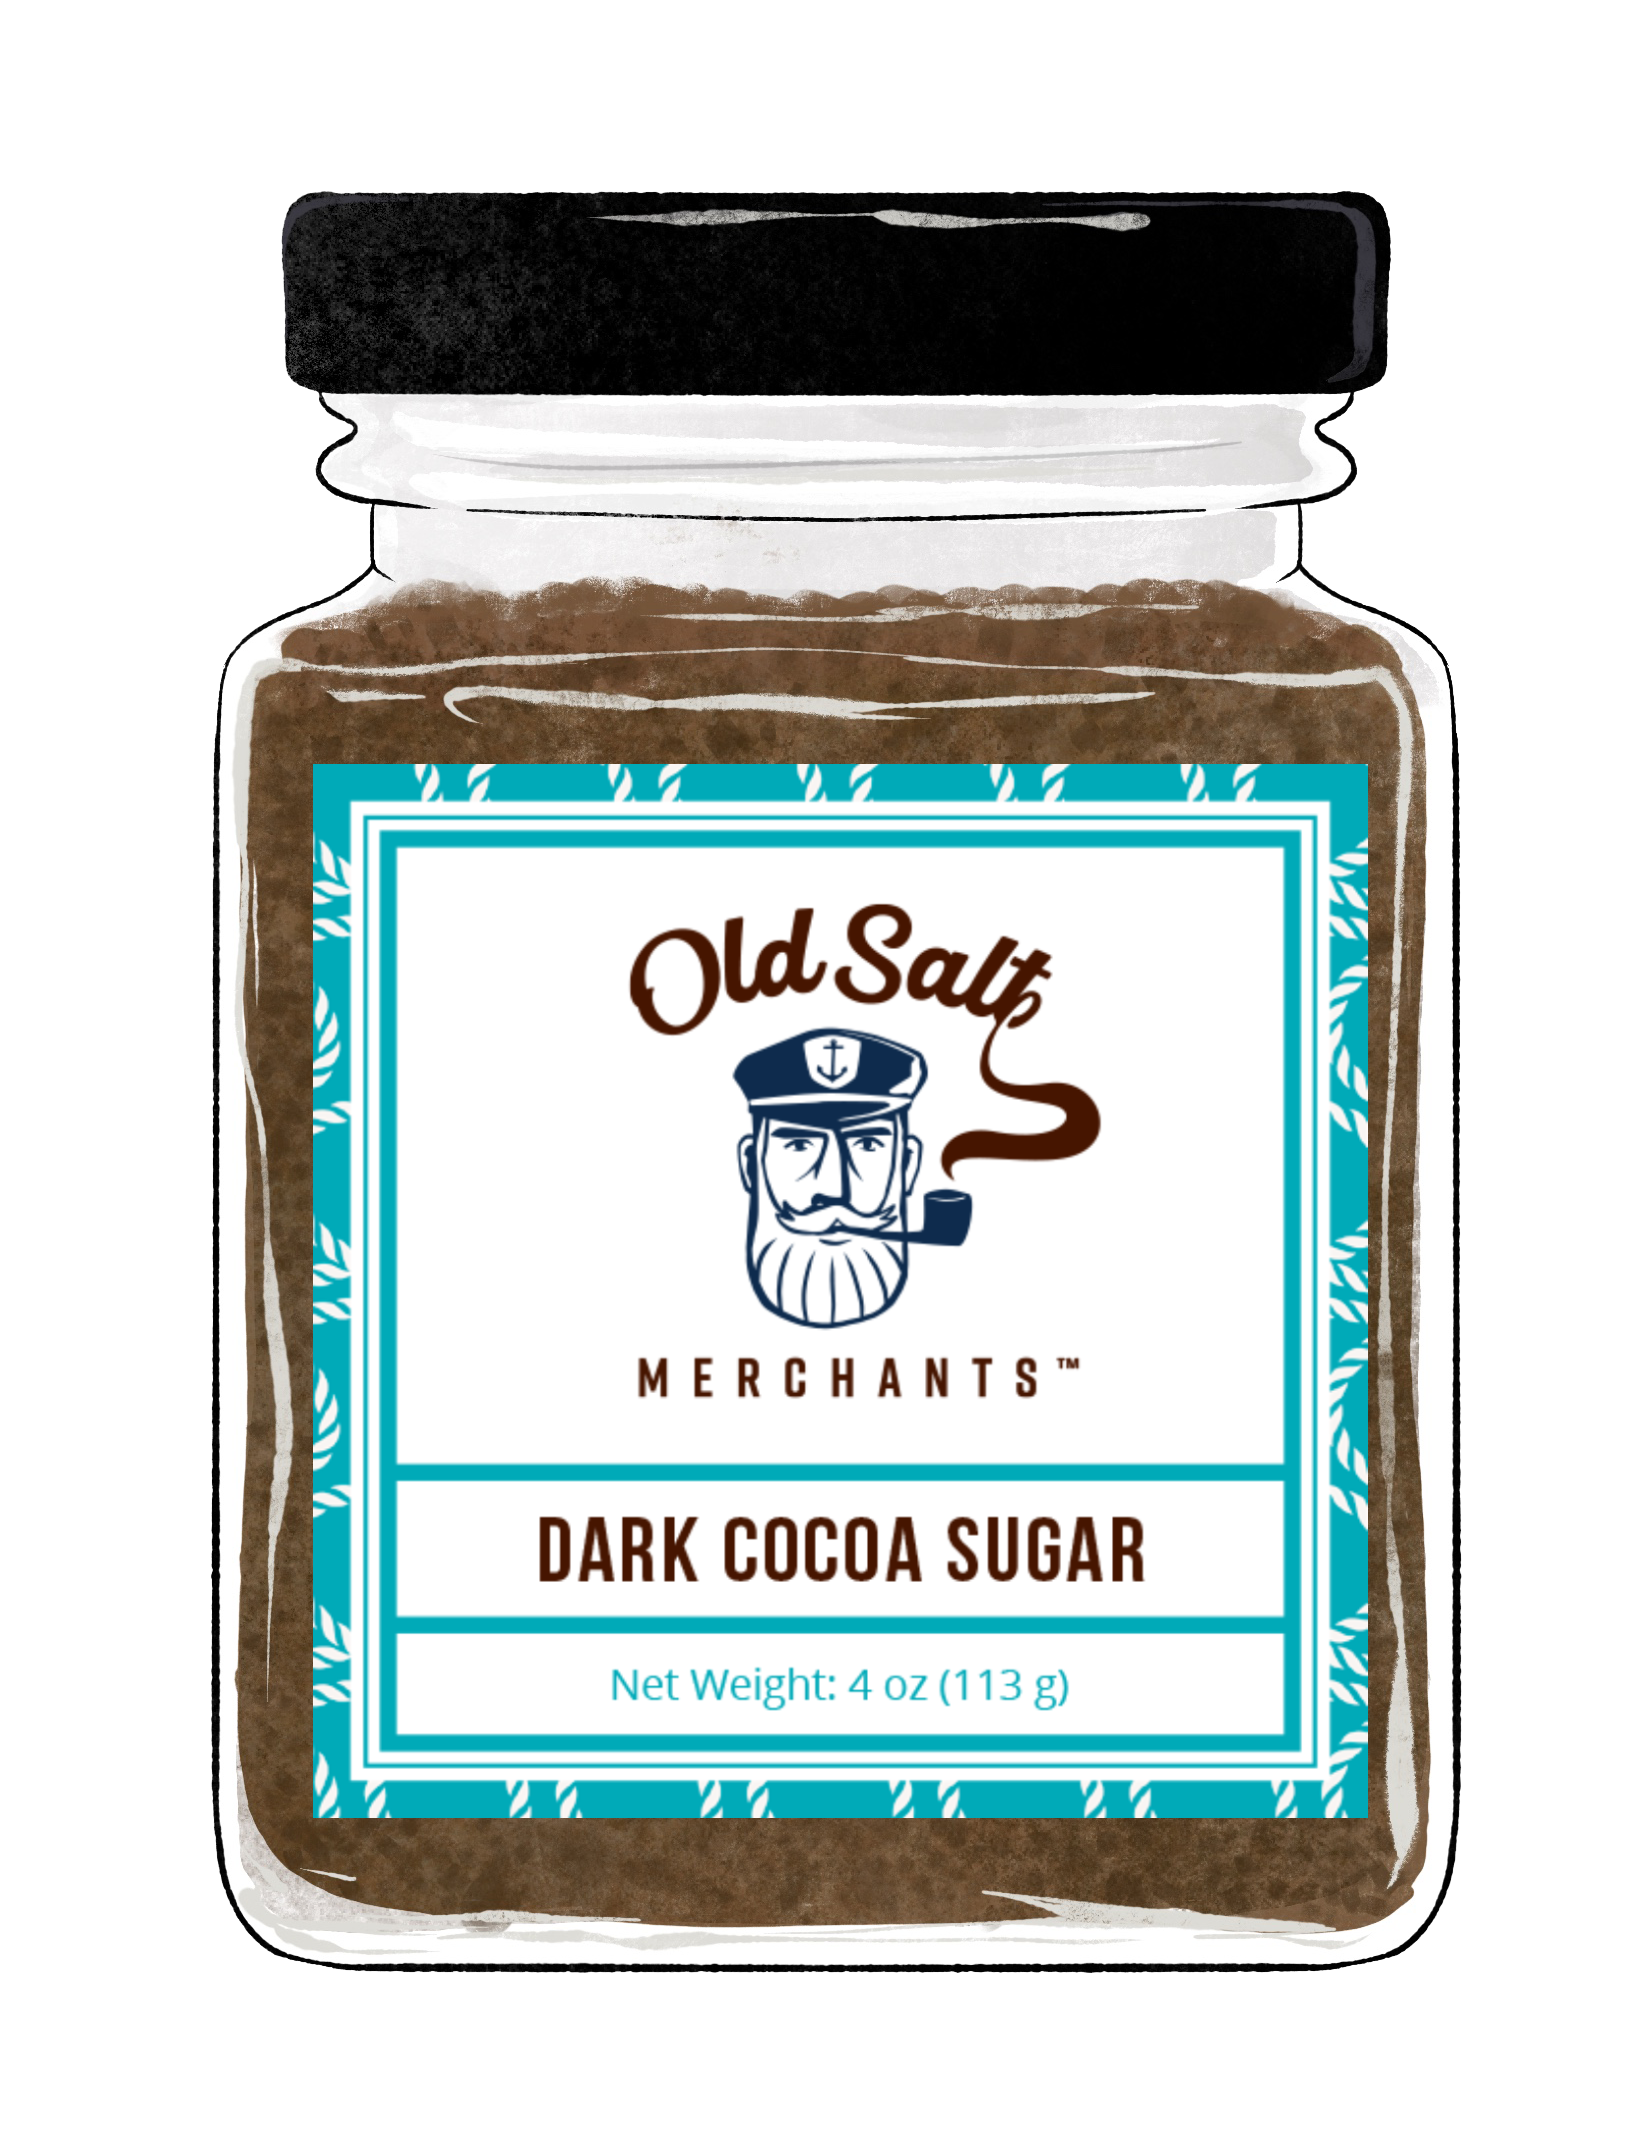 Dark Cocoa Sugar exclusive at Tastermonial